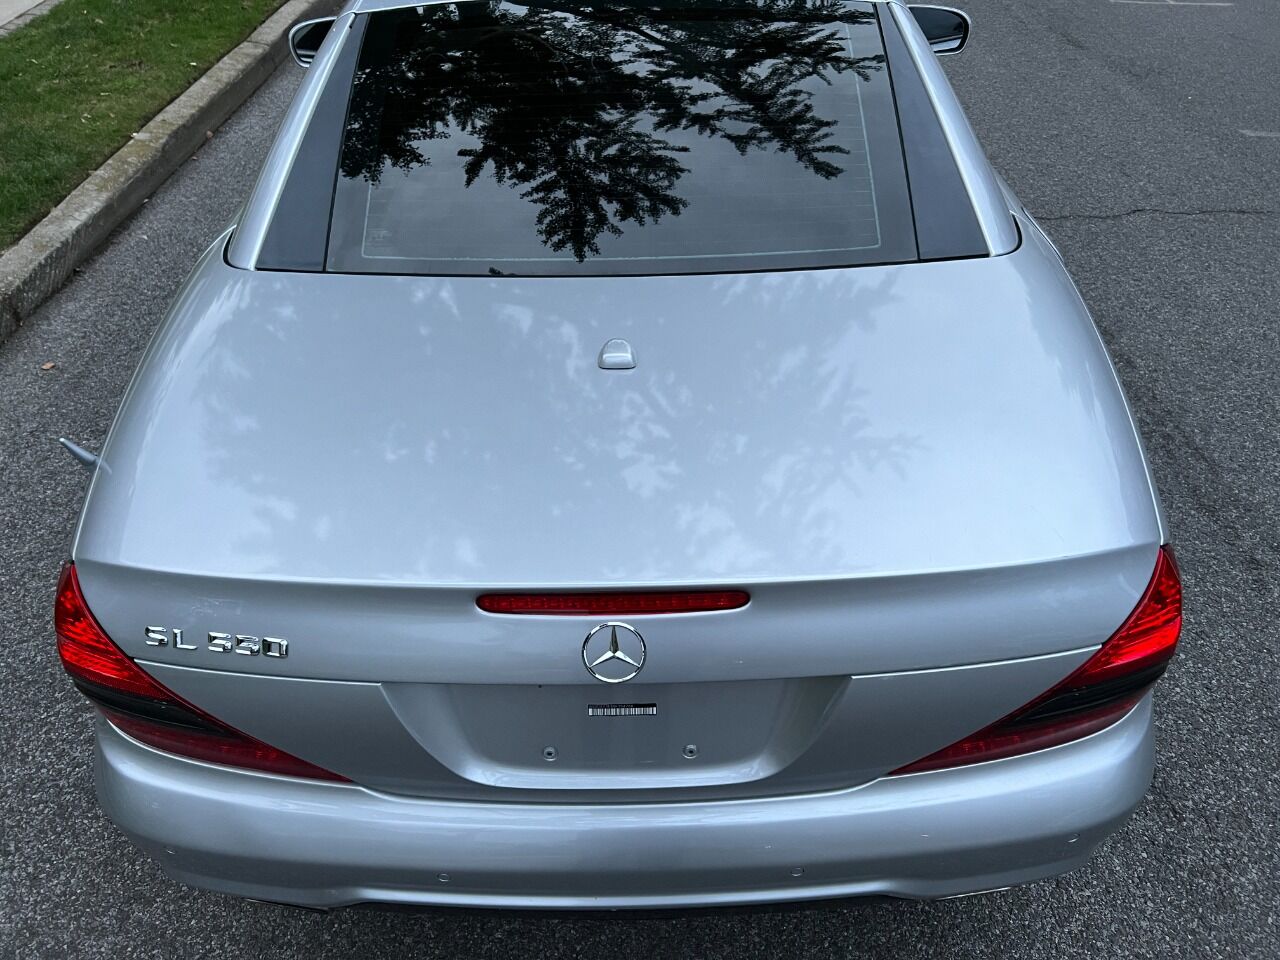 2009 Mercedes-Benz SL-Class Convertible - $19,900